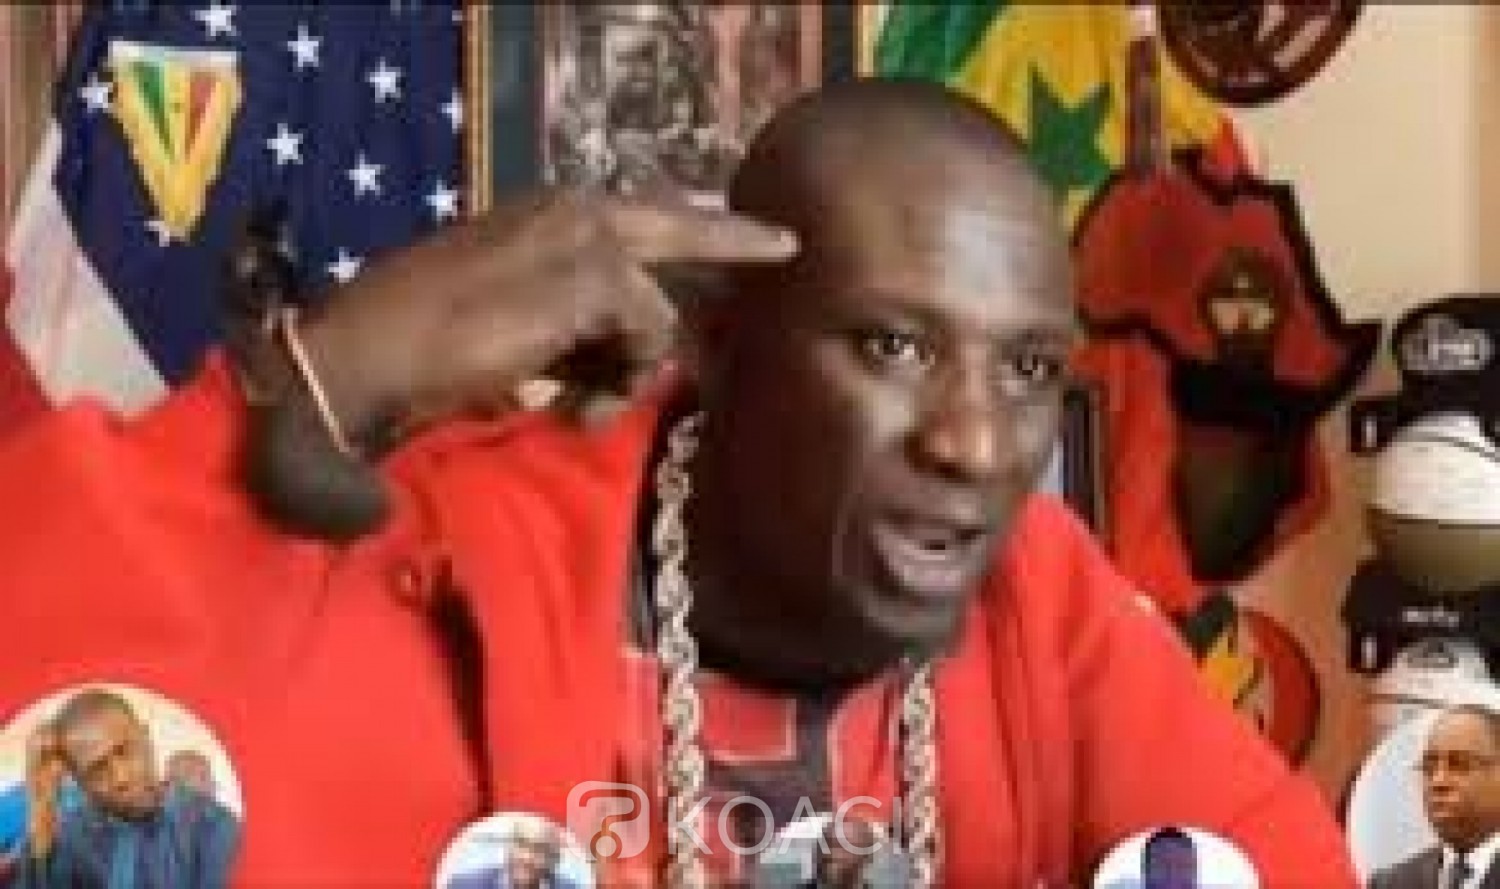 Sénégal : Assane Diouf une nouvelle fois arrêté pour avoir insulté le Président Macky Sall